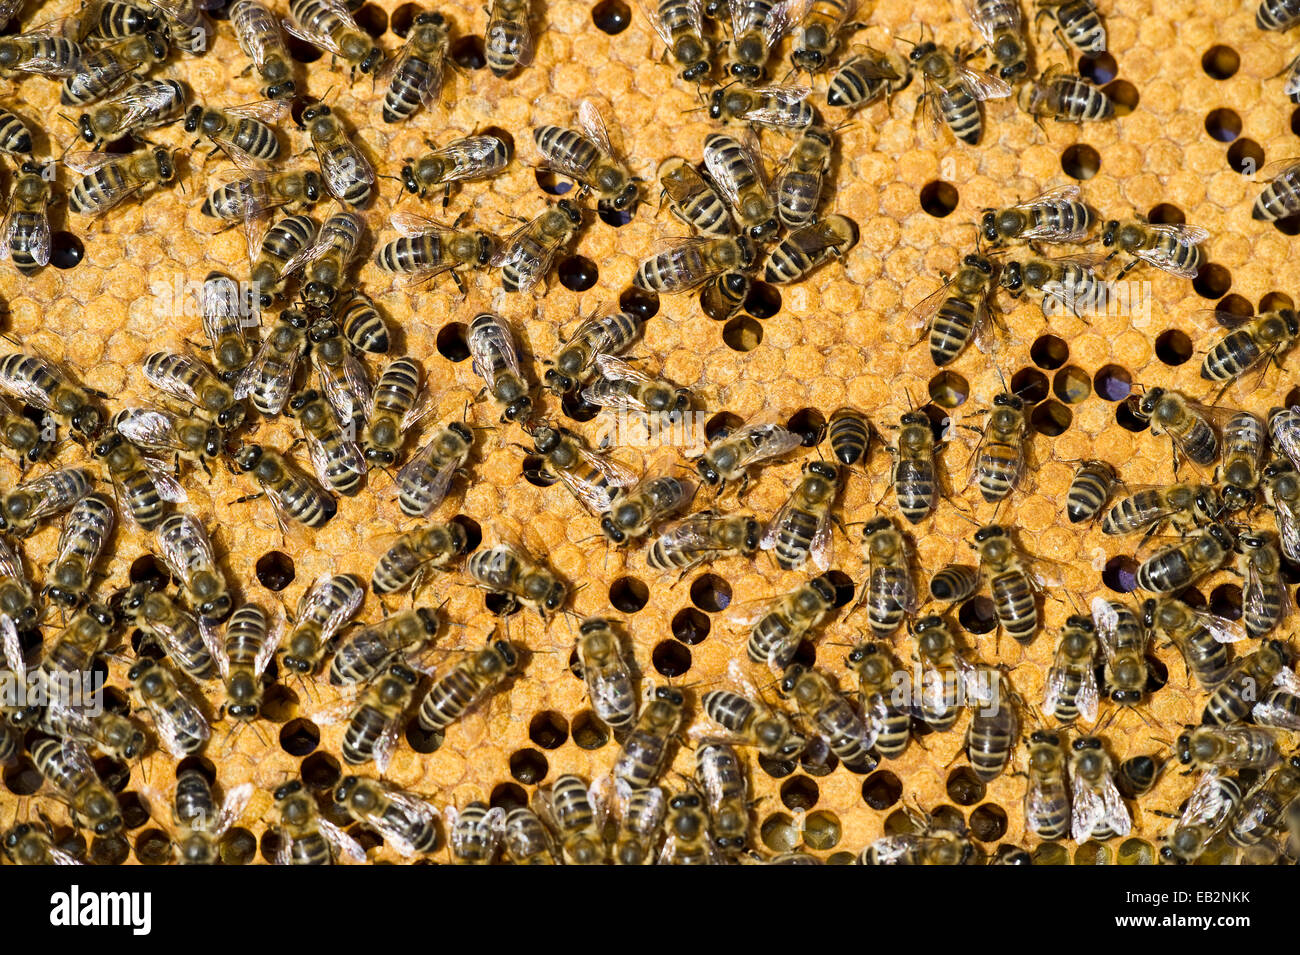 Les abeilles domestiques (Apis sp.) sur un rayon de miel, Allemagne Banque D'Images